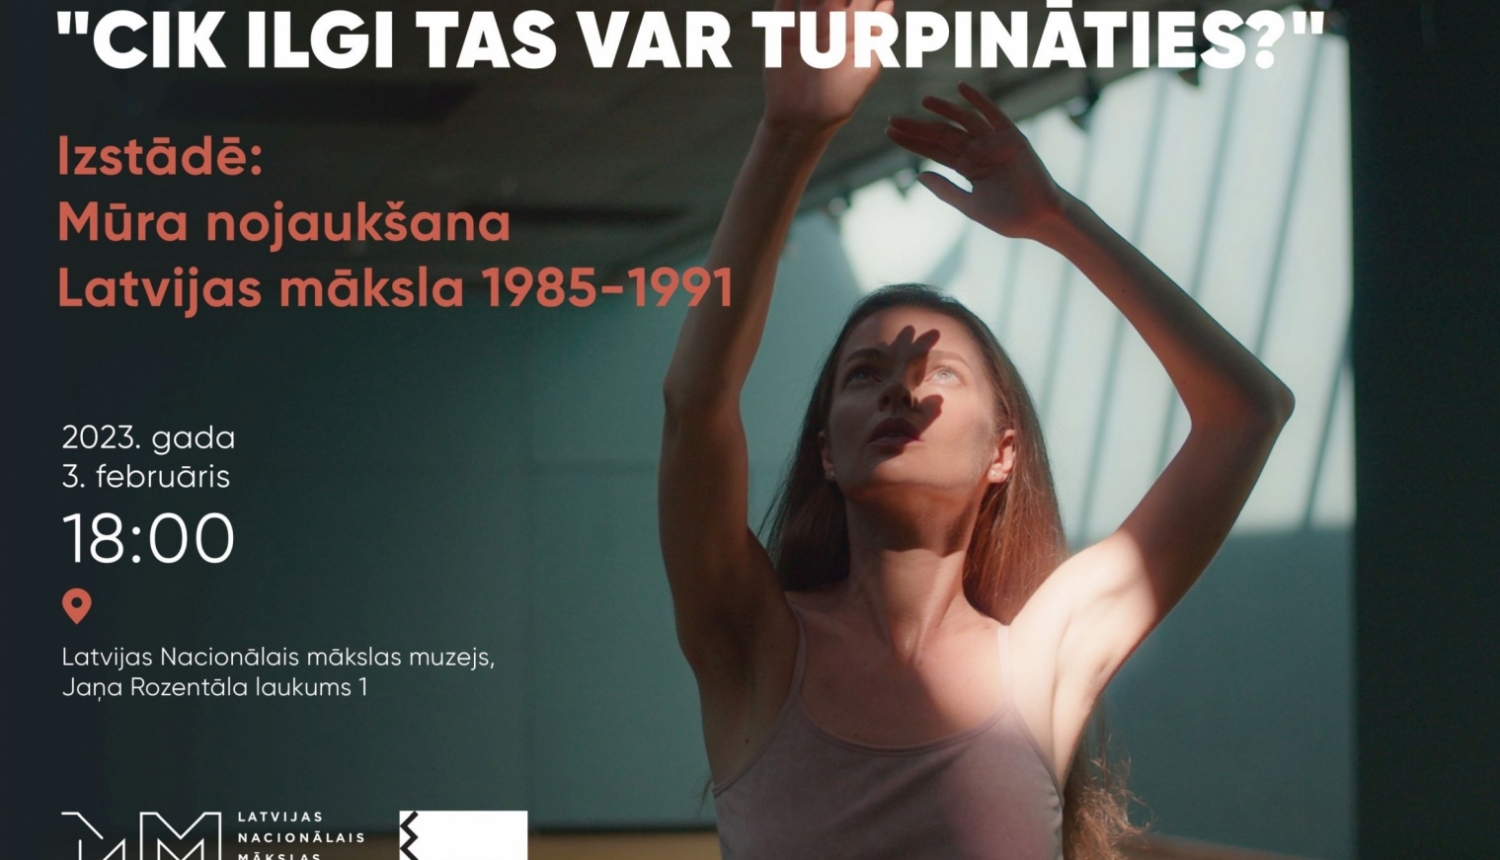 Darjas Kalašņikovas performance “Cik ilgi tas var turpināties?”